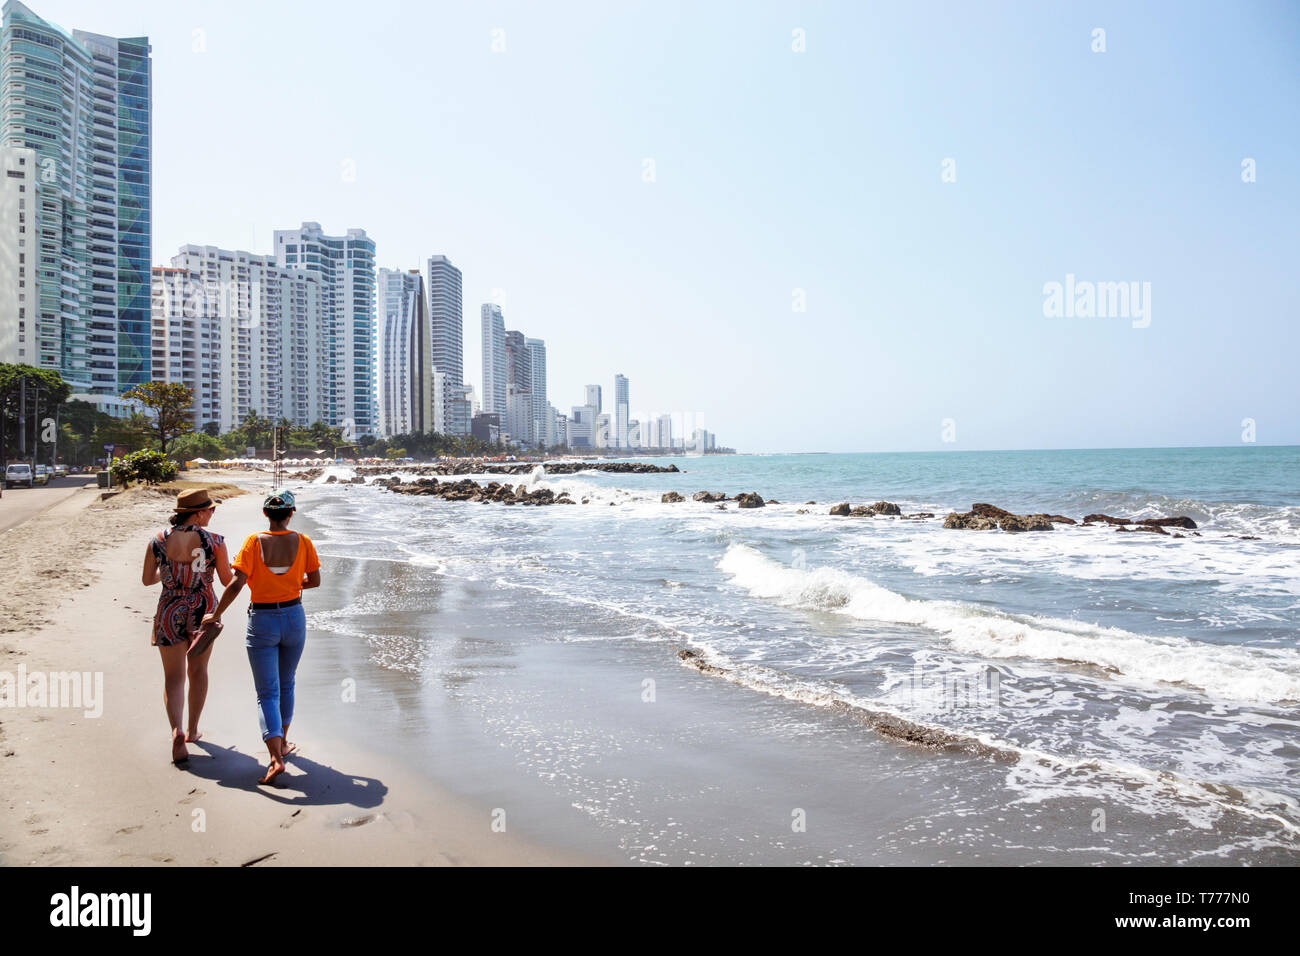 Colombie Cartagena Bocagande, mer des Caraïbes plage publique de plages, hispanique femmes amis surf, les élévations, grandes tours condominiums appartements Banque D'Images